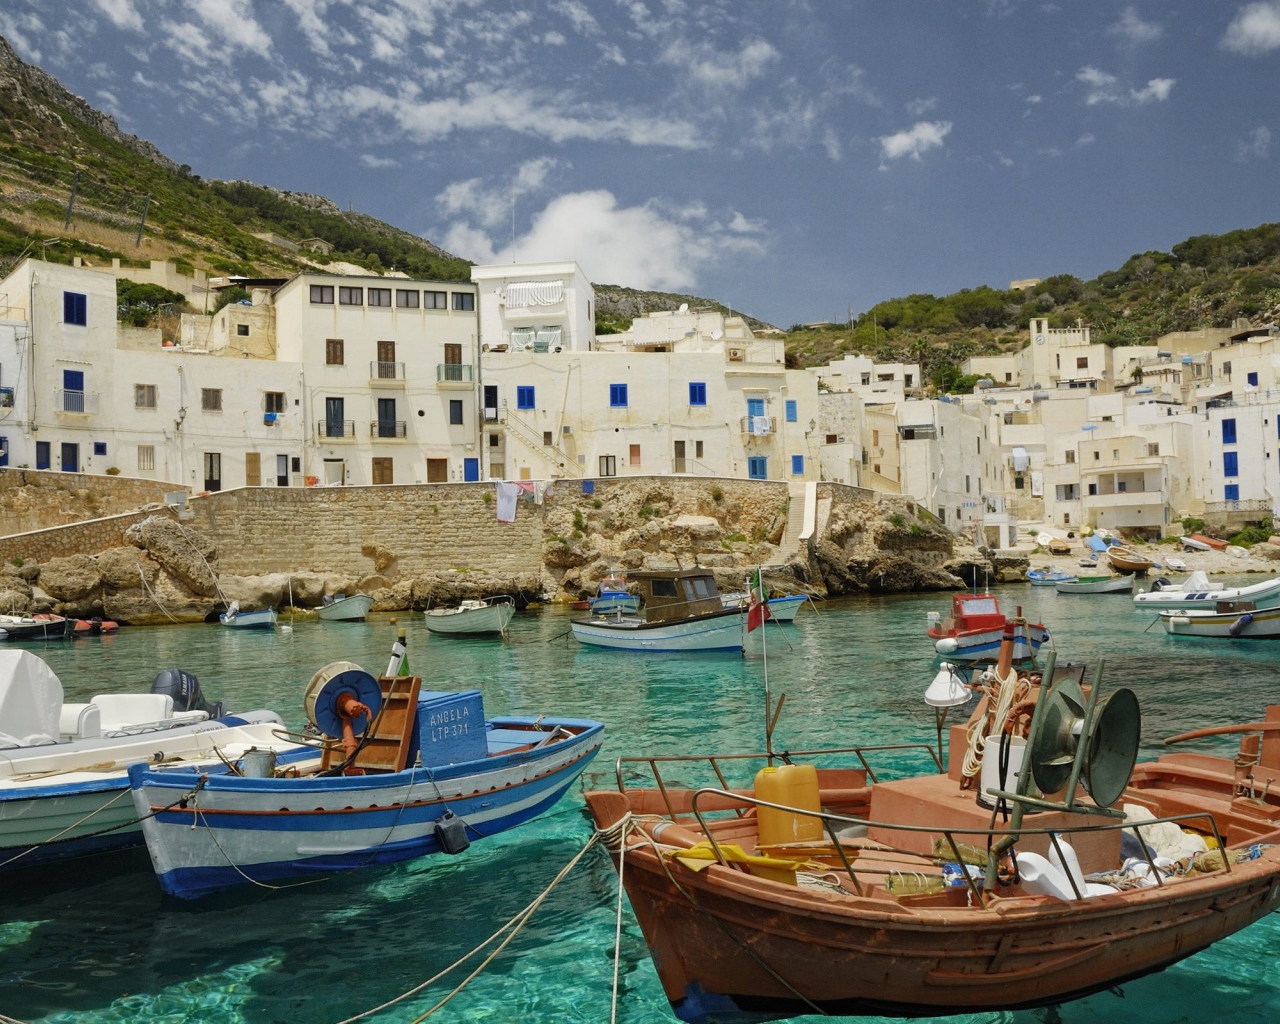 Лодки у берега на острове Сицилия, Италия